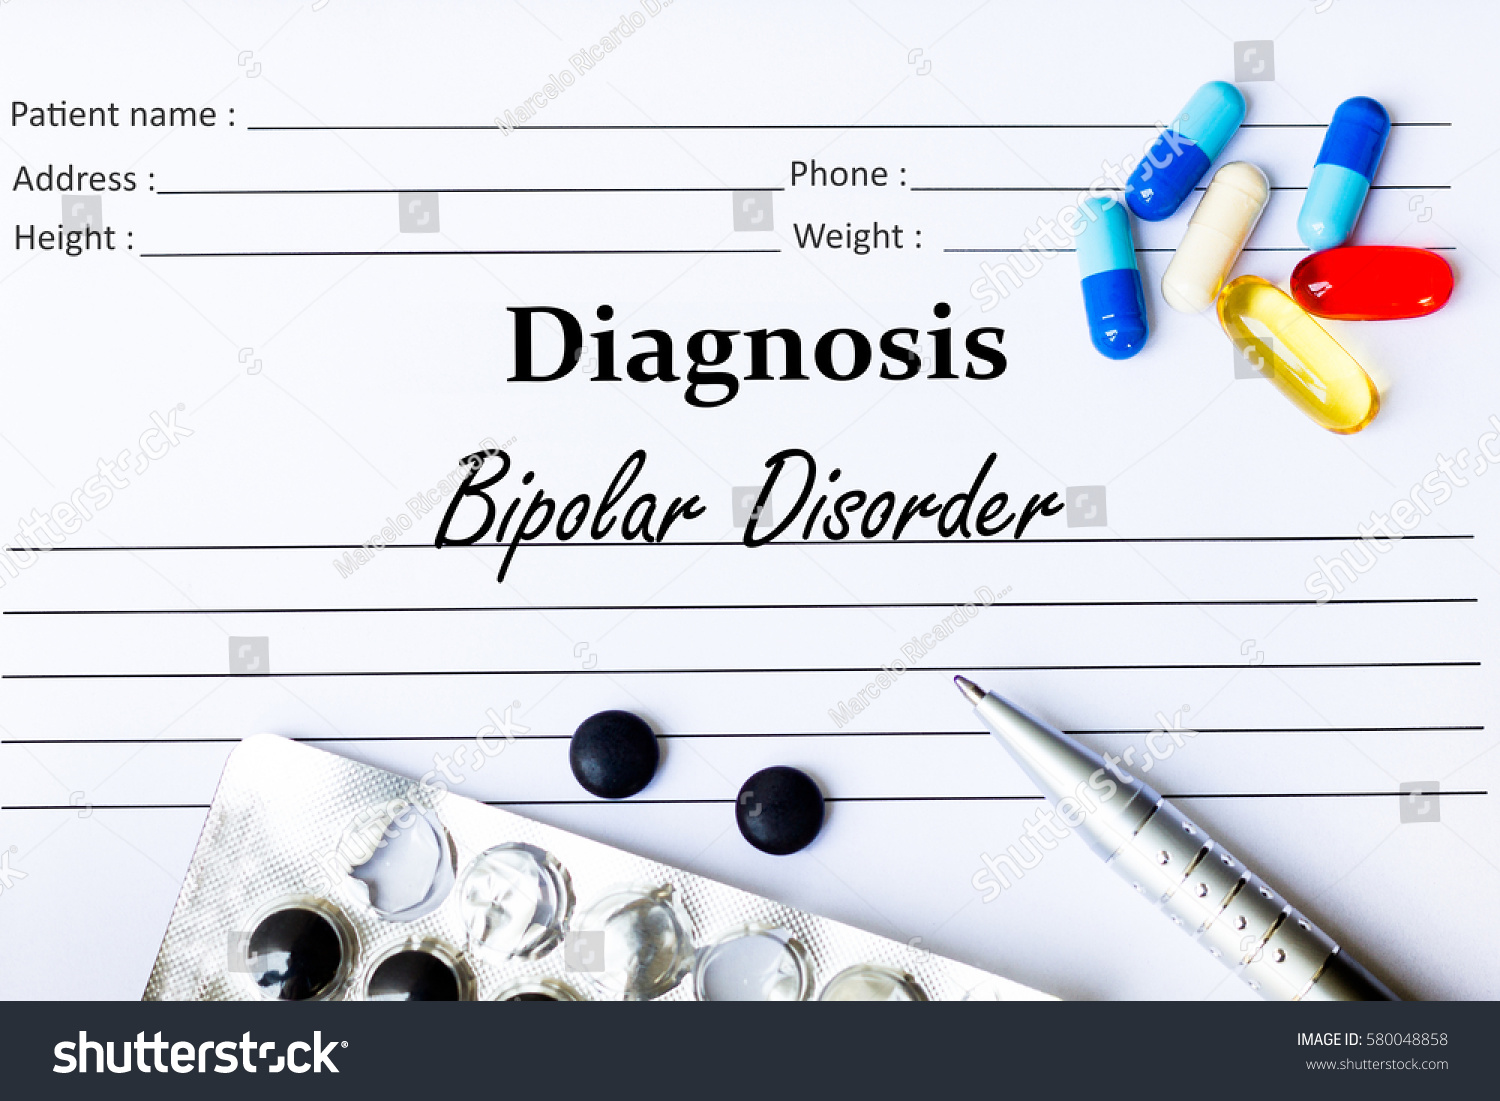 bipolar disorder paper